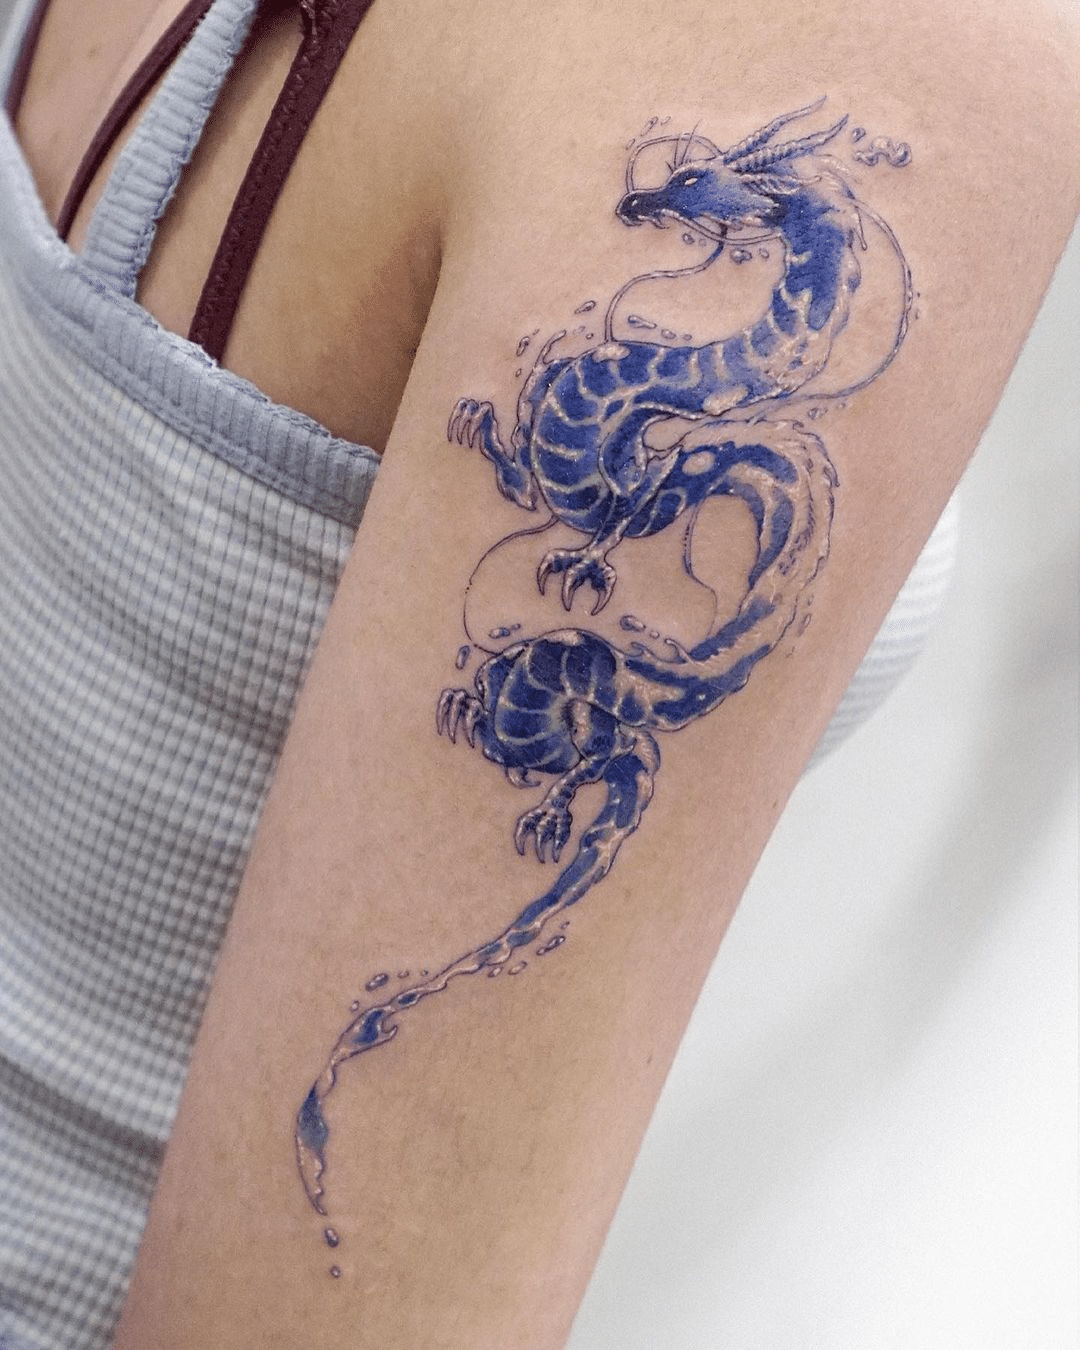 Animal Tattoo ideas on arm